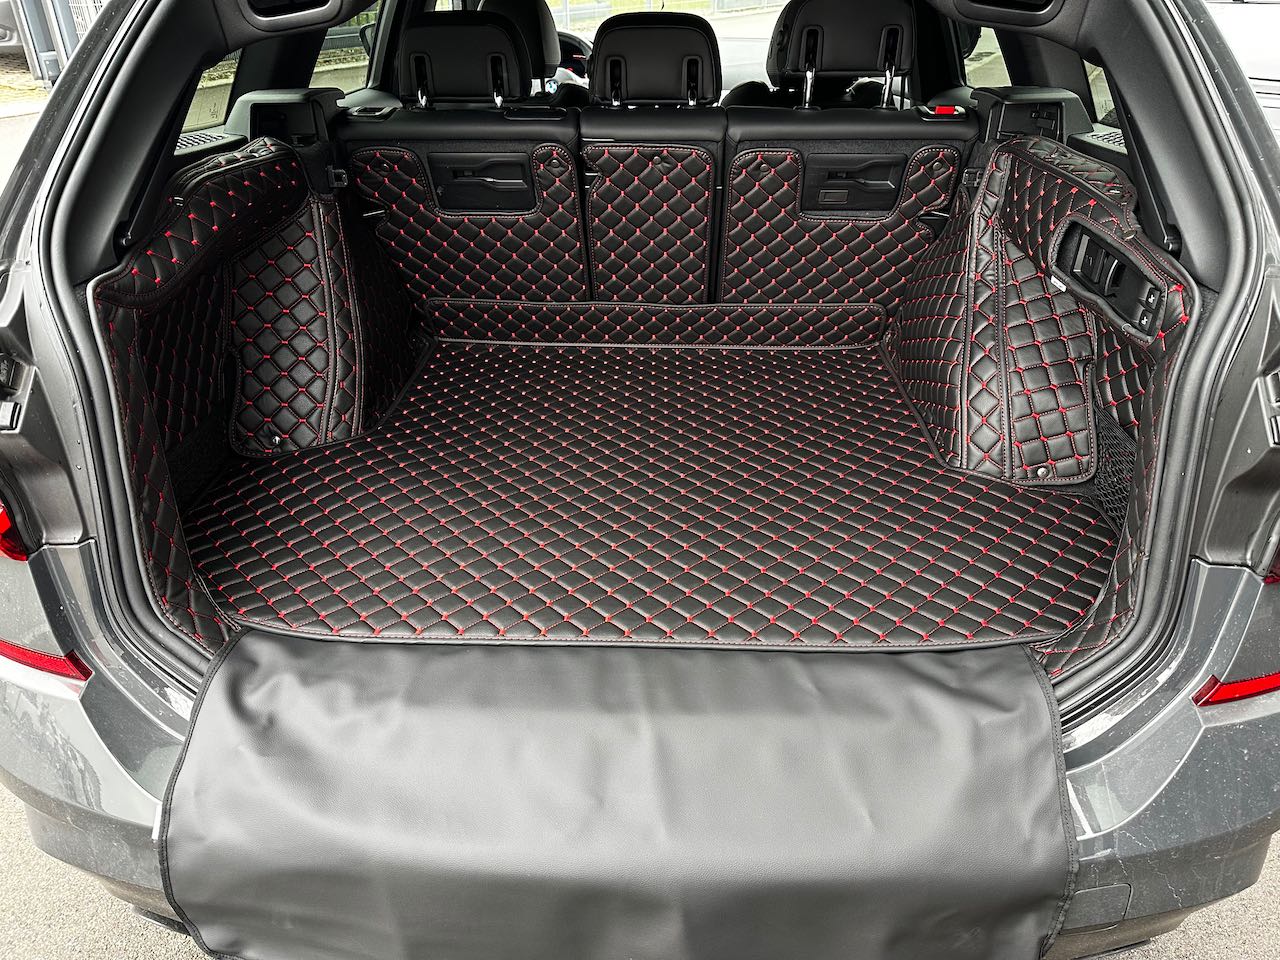 CARSTYLER® Kofferraummatte Passend für BMW X7 6 Sitzer Leder